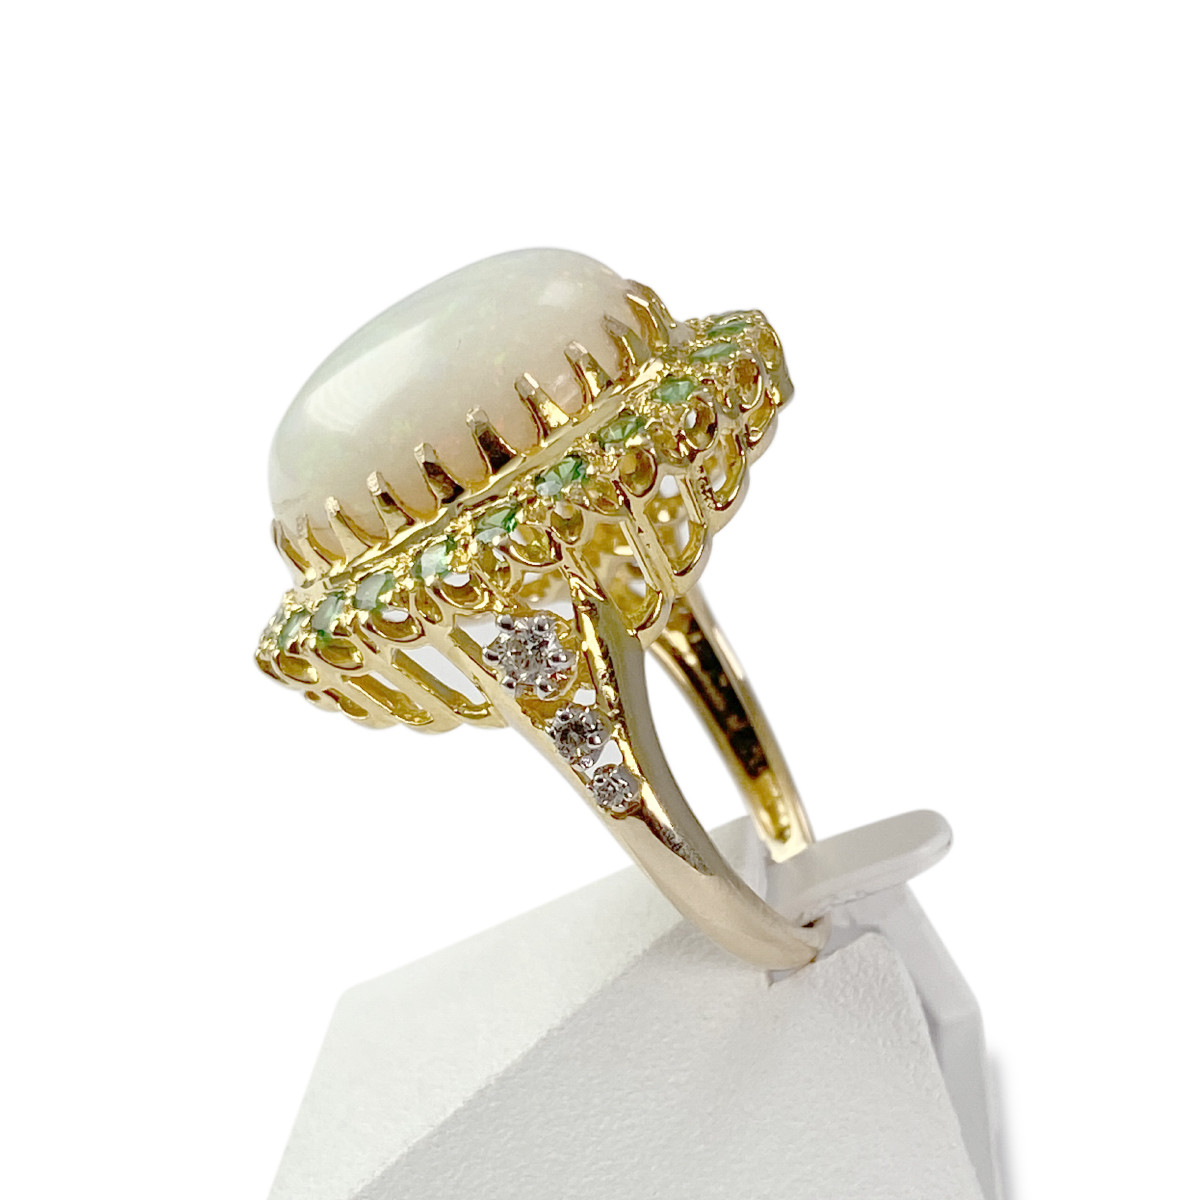 Bague d'occasion or 750 jaune opale tsavorites diamants - vue 2